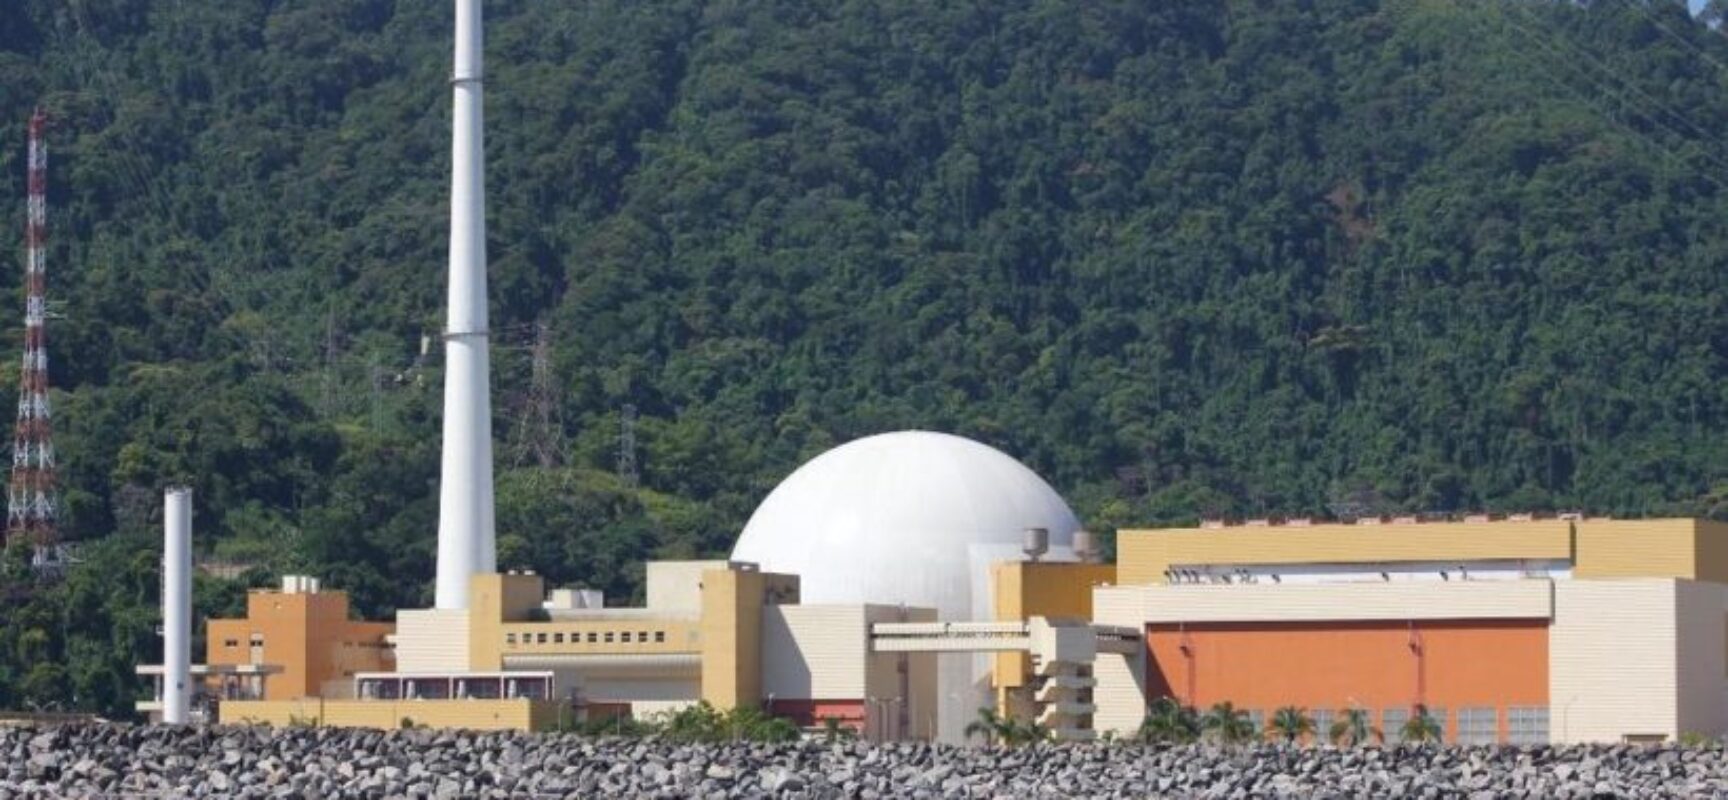 Usina Nuclear Angra 2 faz parada de 48 dias para troca de combustível